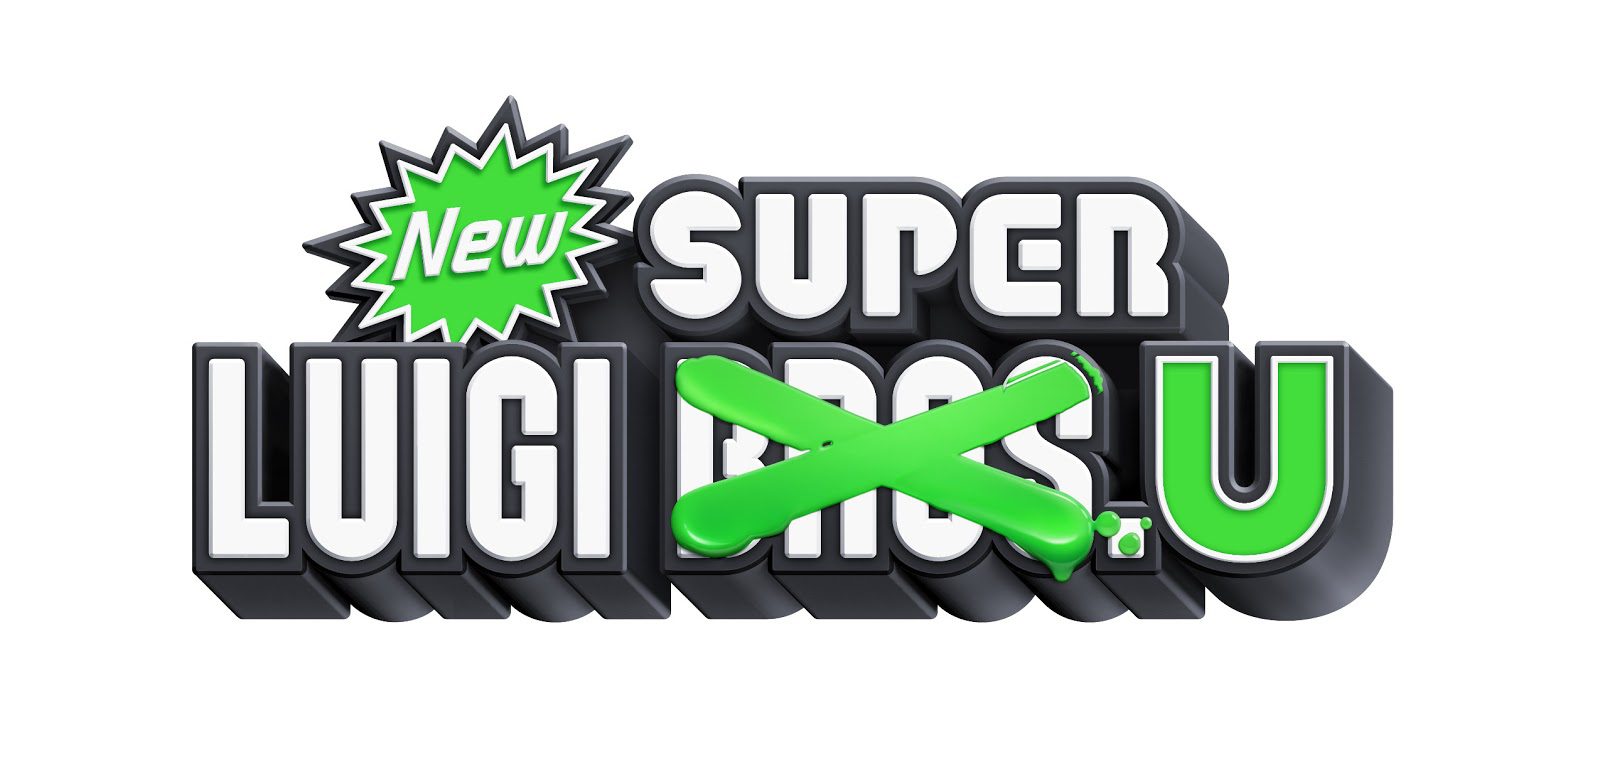 New Super Luigi U Fecha, Precio y Portada (fotos y vídeo)